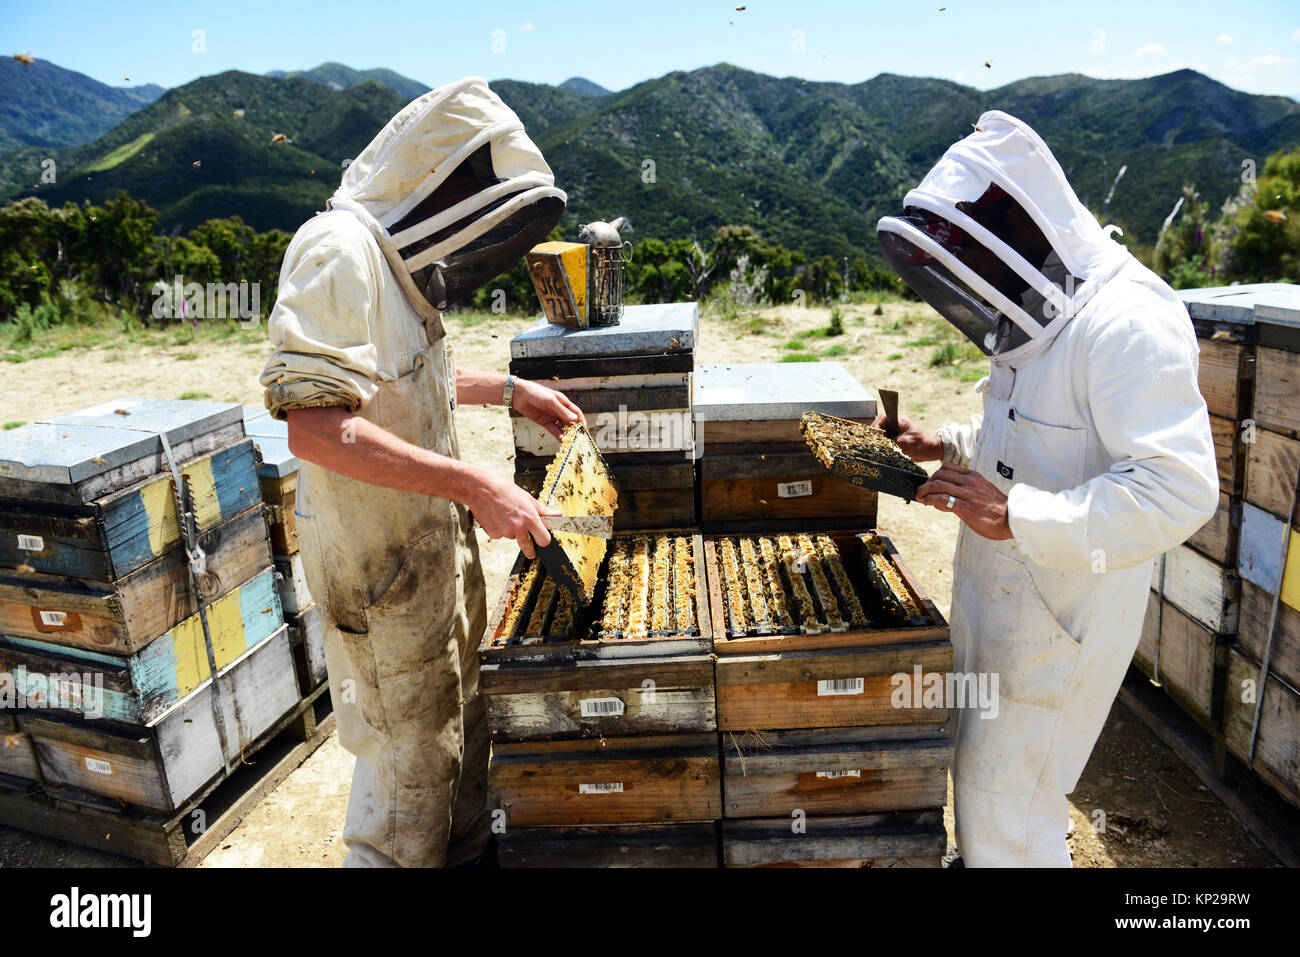 Manuka Honig Imker aus der Steens Manuka Unternehmen Kontrolle über die Bienenstöcke in der südlichen Region Wairarapa von Neuseeland. Stockfoto